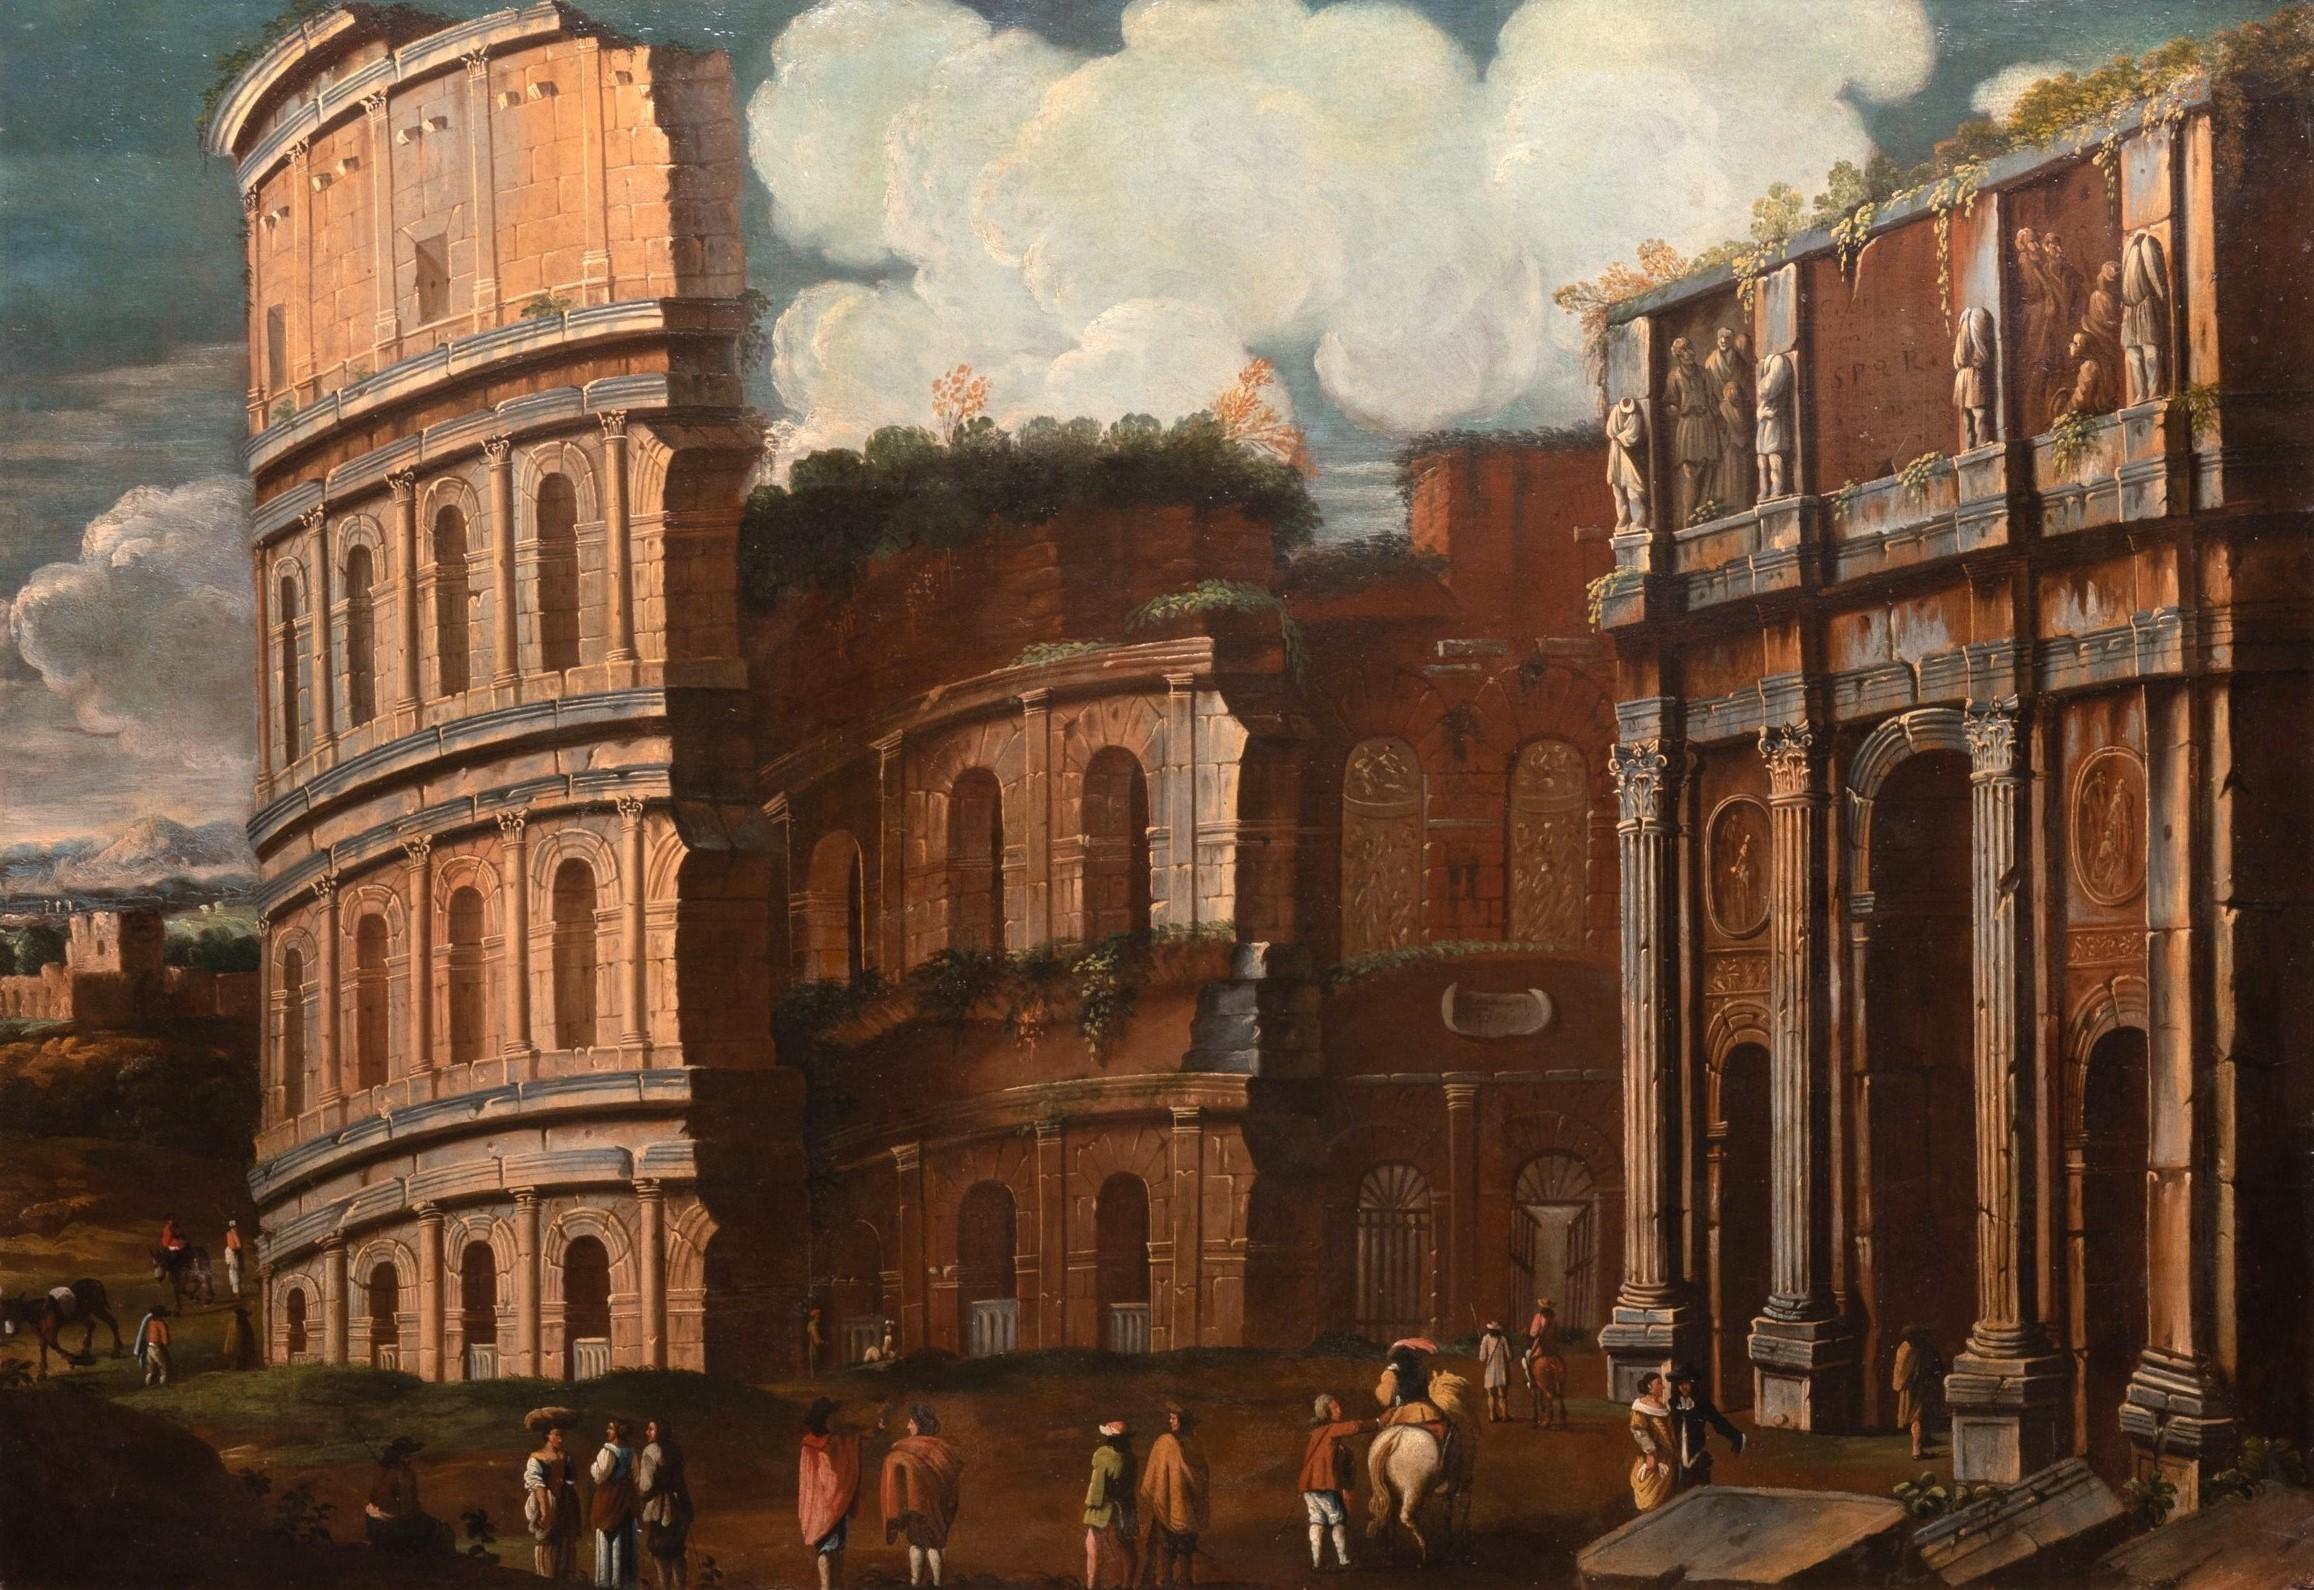 A 17th c. Italian school, Capriccio with the Colosseum, circle of V. Codazzi - Painting by Viviano Codazzi